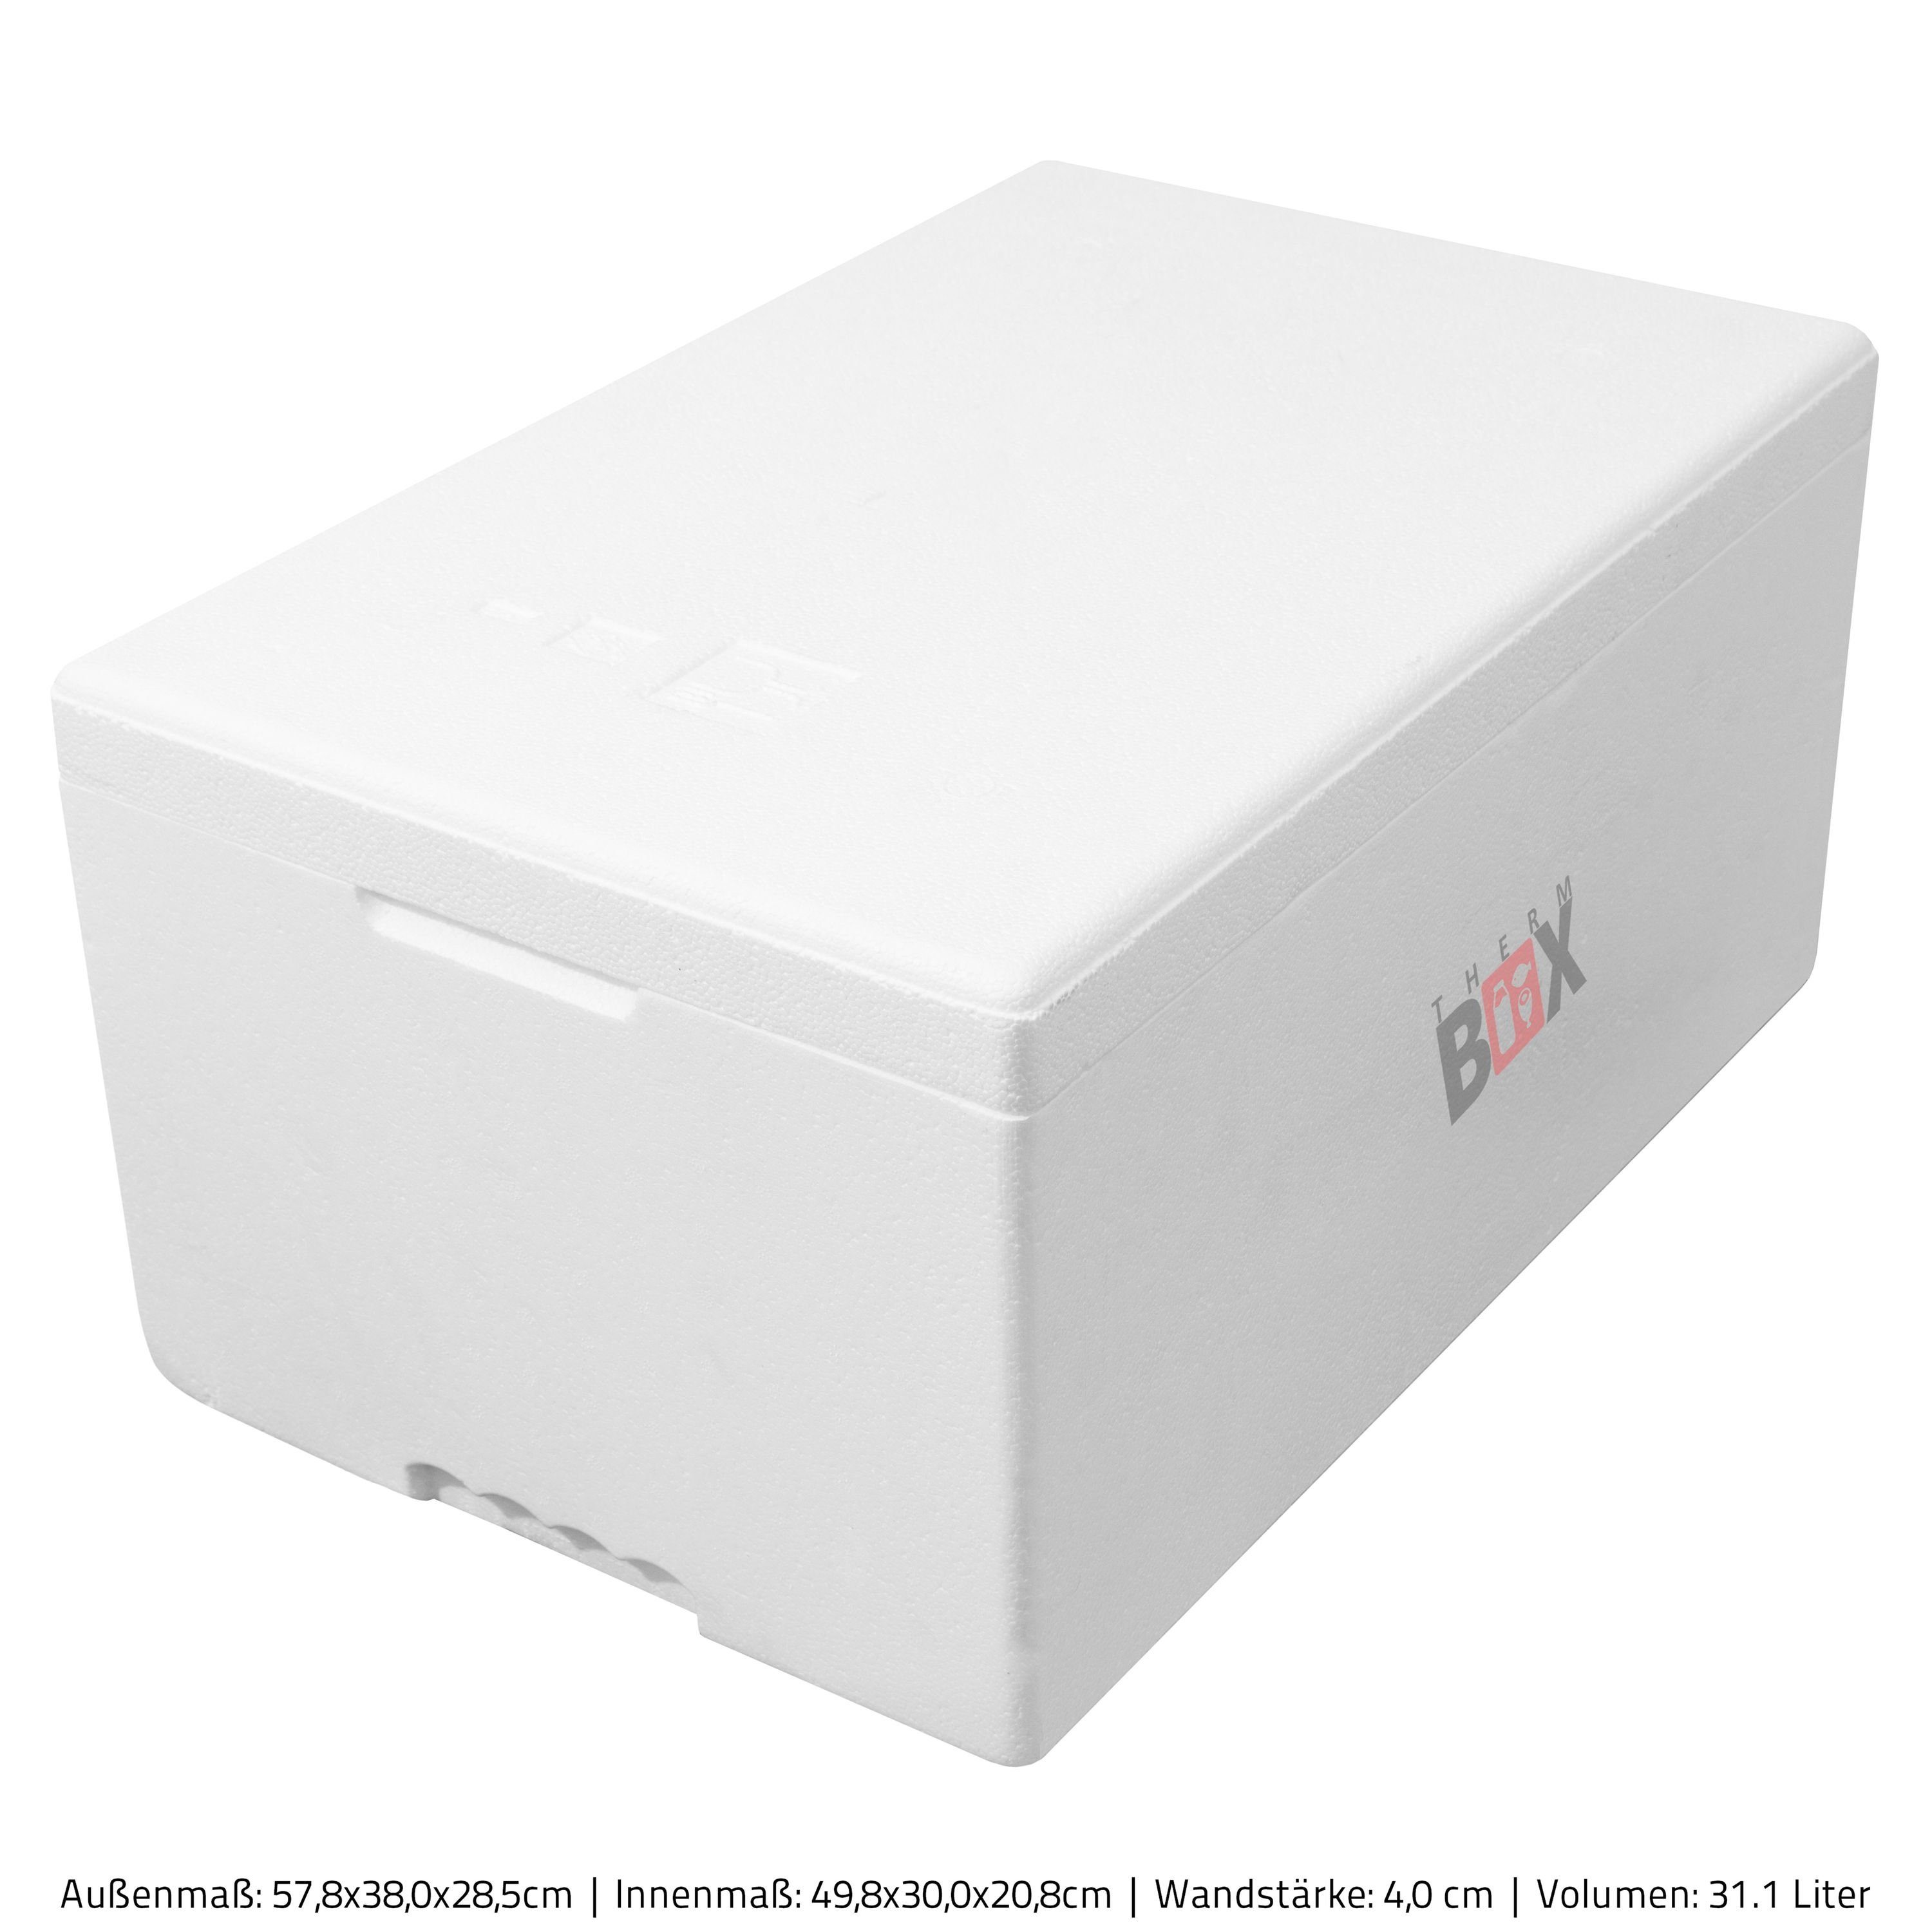 Warmhaltebox 31M 4,0 Wand: im 31L Erweiterbar Wiederverwendbar, Box cm Styropor-Verdichtet, Karton), Thermobox 49x30x20cm (0-tlg., mit Modularbox Deckel Kühlbox Isolierbox Thermobehälter THERM-BOX Innenmaß: